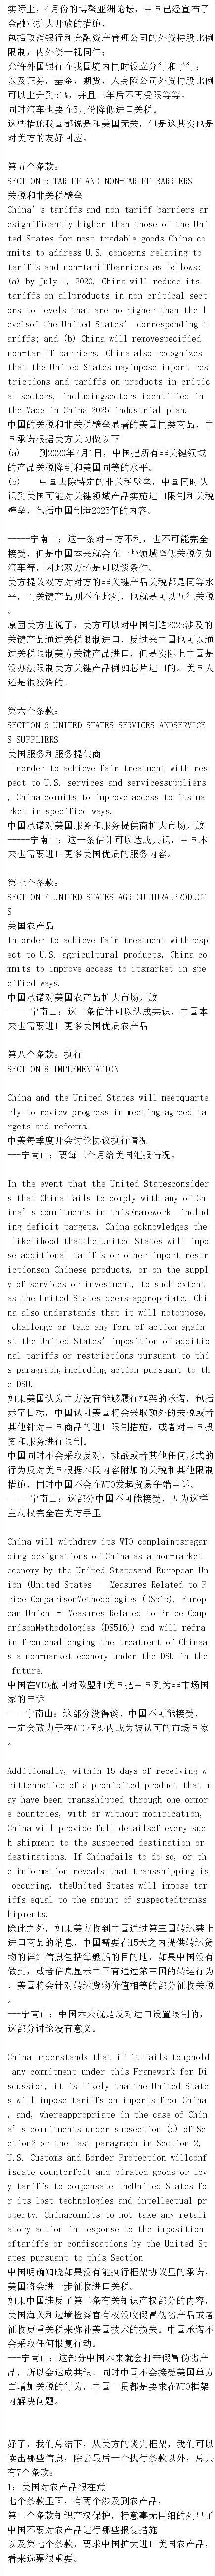 中美北京贸易谈判大曝光，美国对中国提这些条件，还当是1840年吗？ - 9